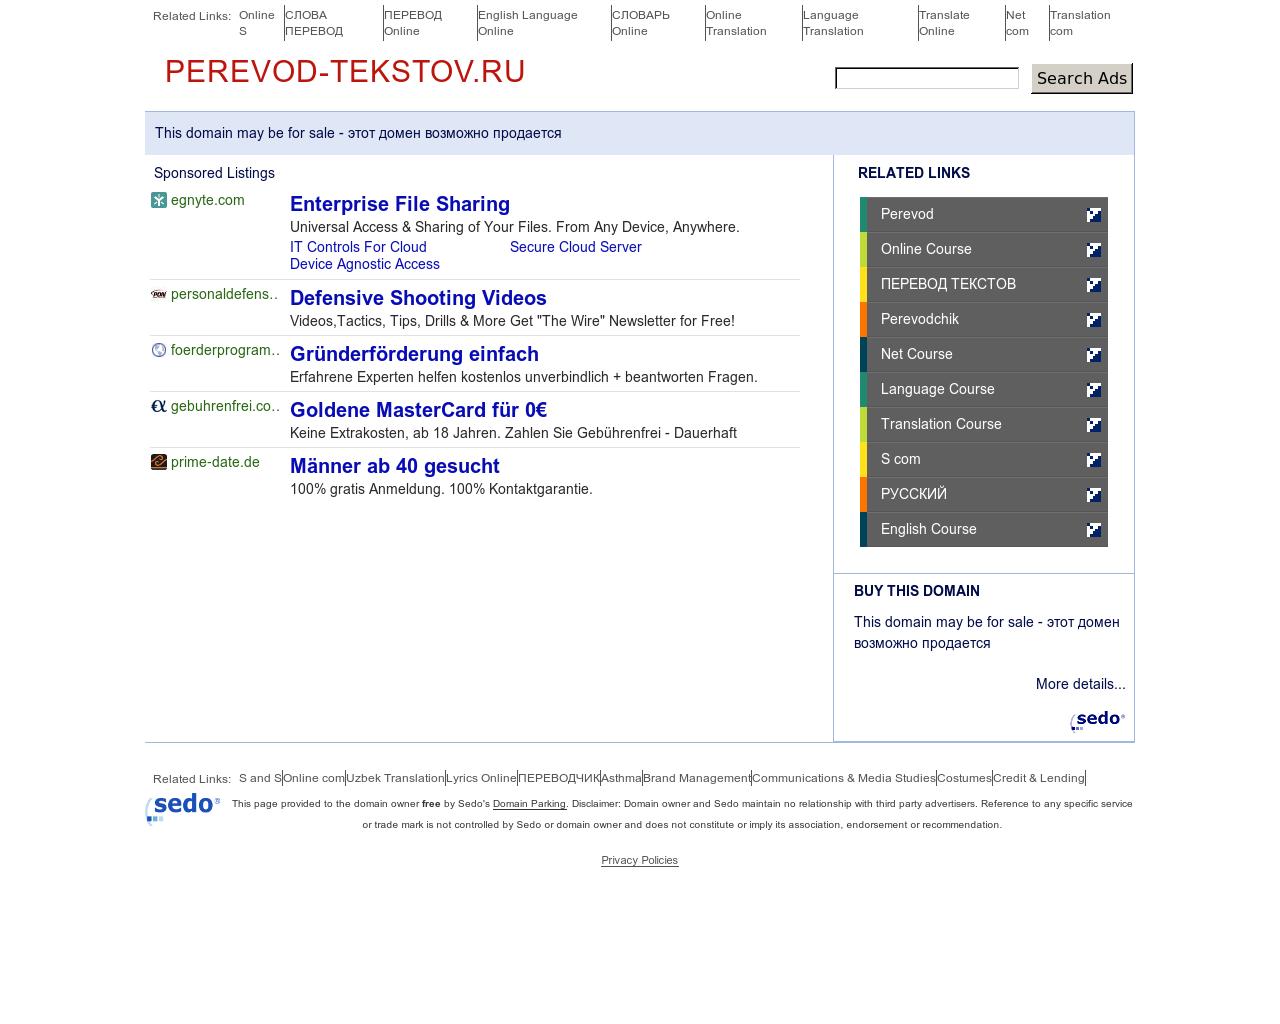 Изображение сайта perevod-tekstov.ru в разрешении 1280x1024